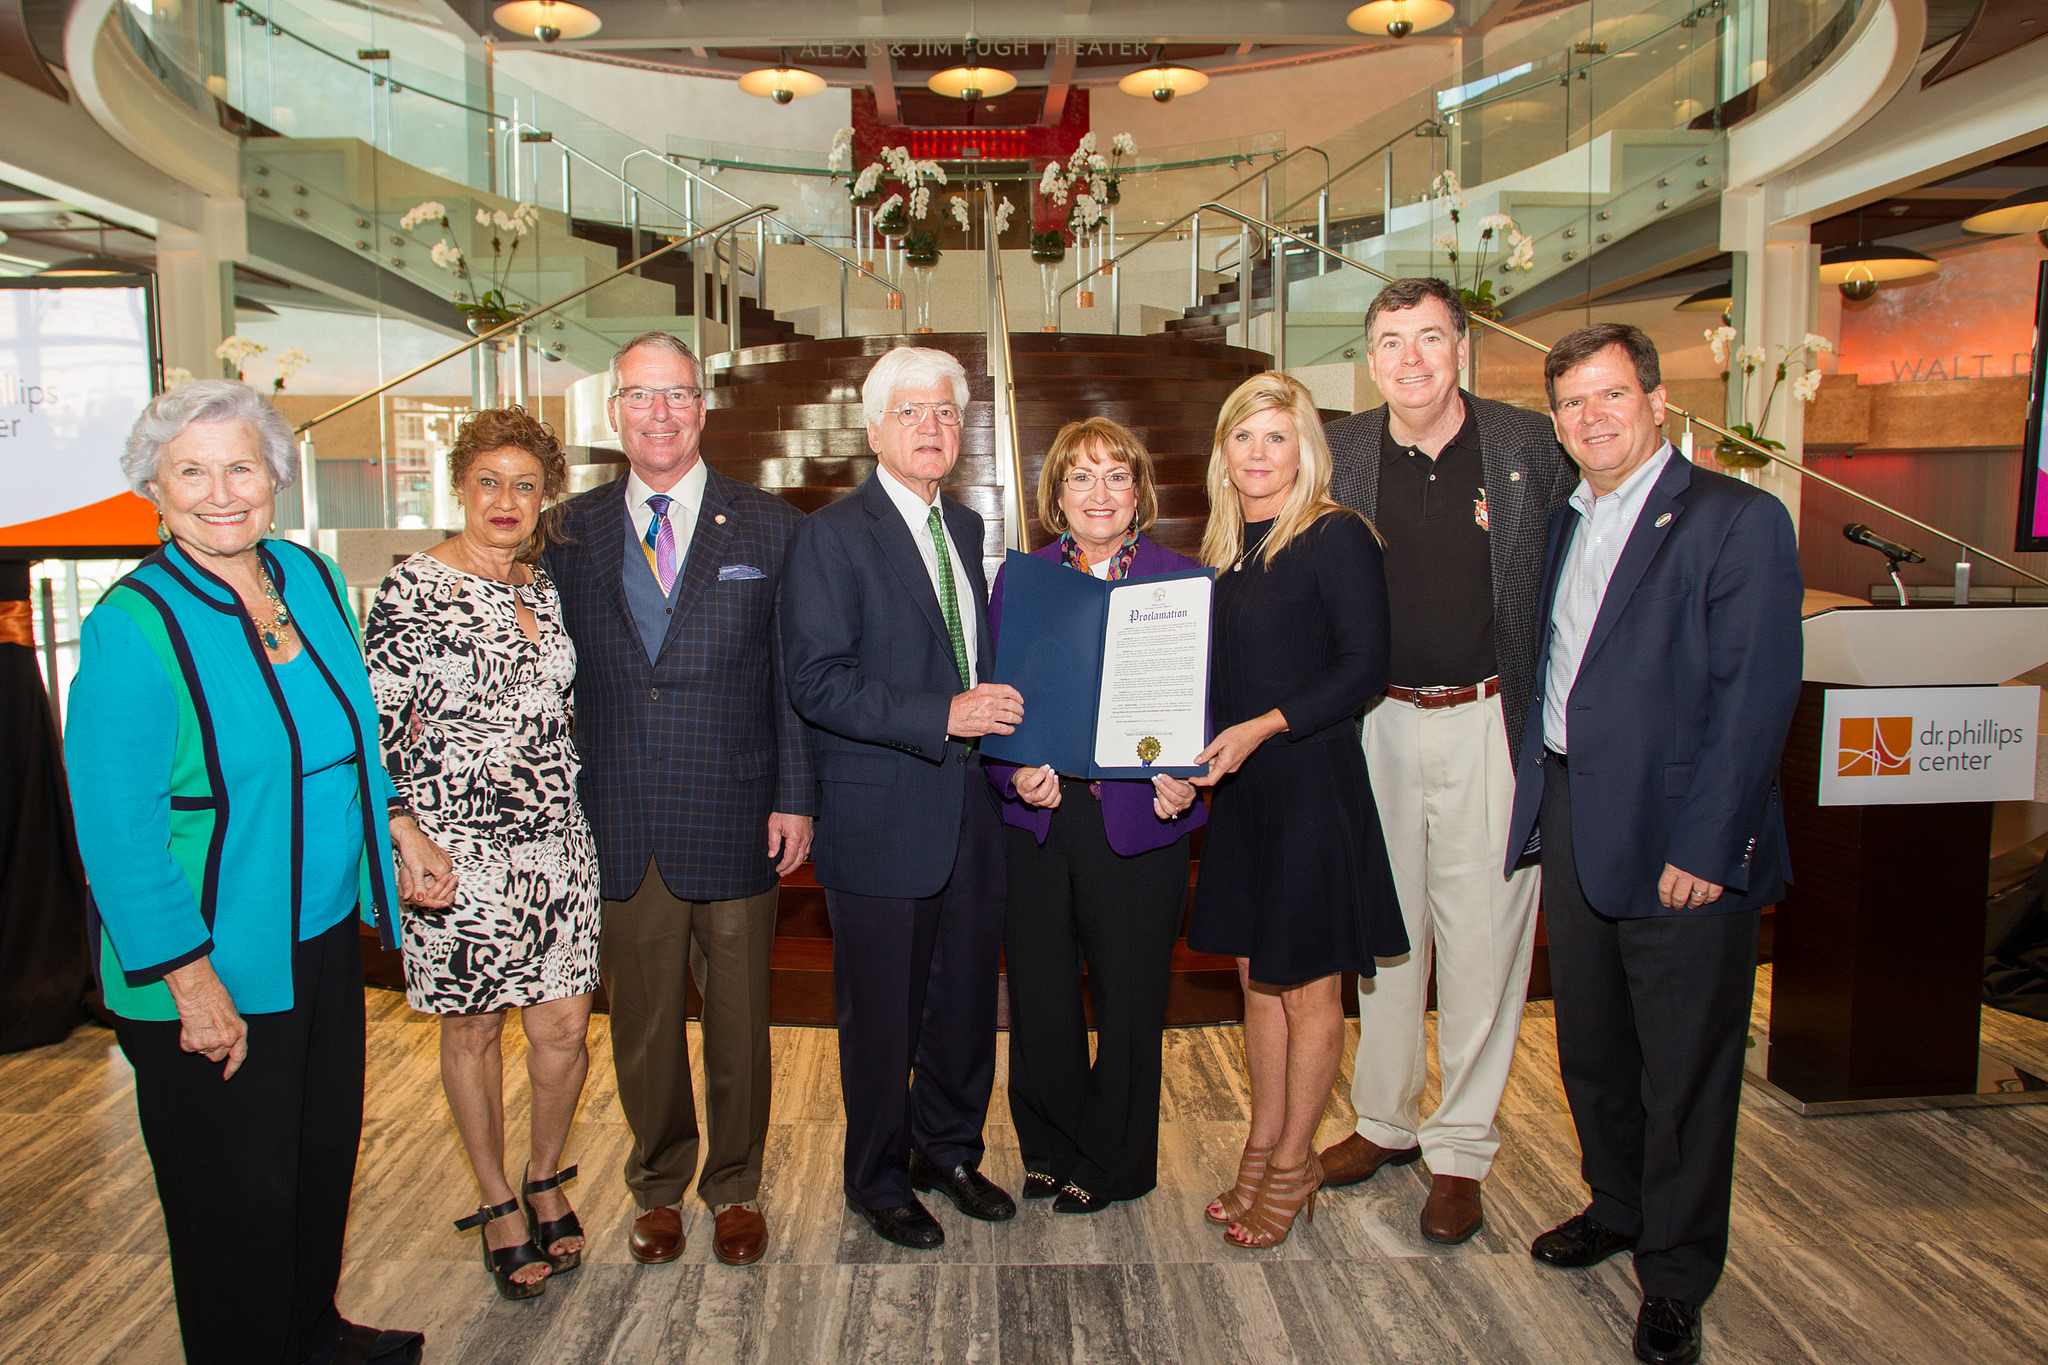 La Alcaldesa Teresa Jacobs y líderes de la comunidad en la celebracíon del primer aniversario del Dr. Phillips Center